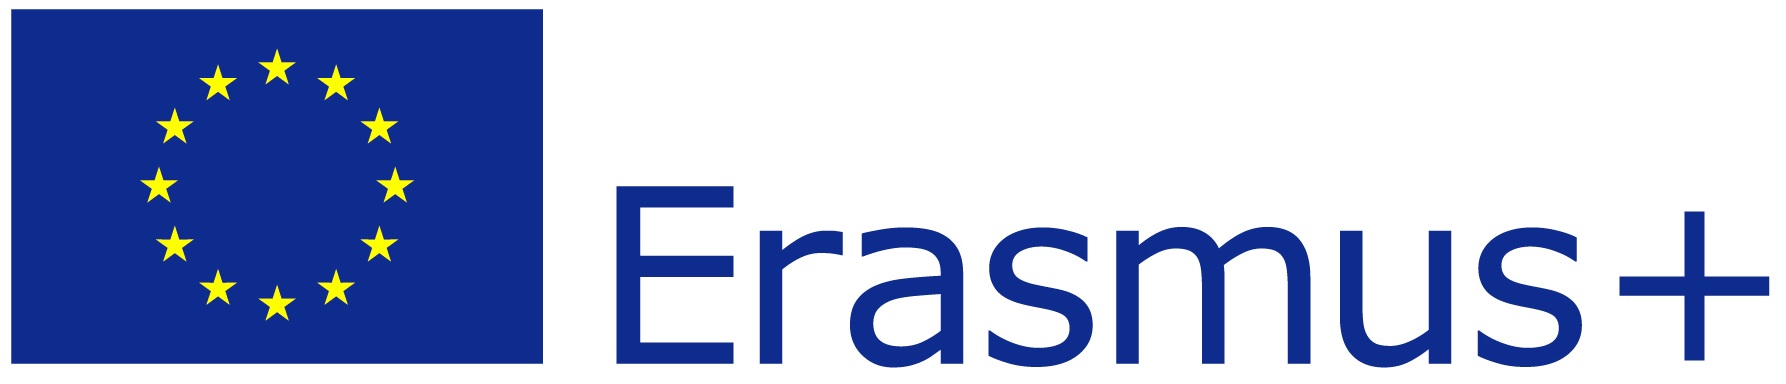 erasmus+ logo oficial